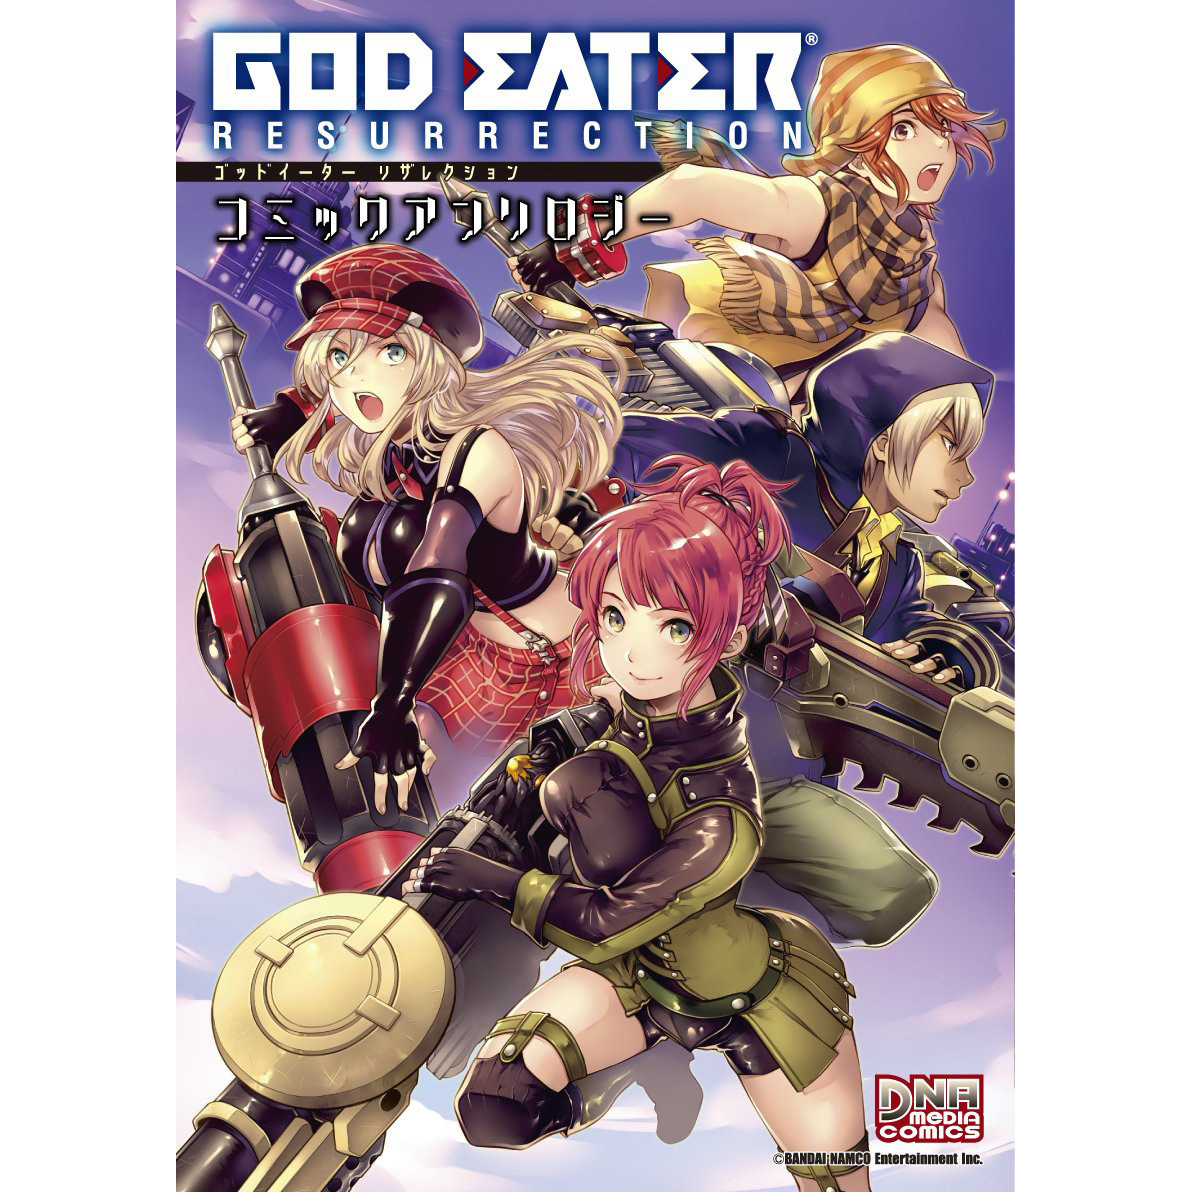 Manga Book Details about   JAPAN Gods Eater 2 Dengeki Comic Anthology